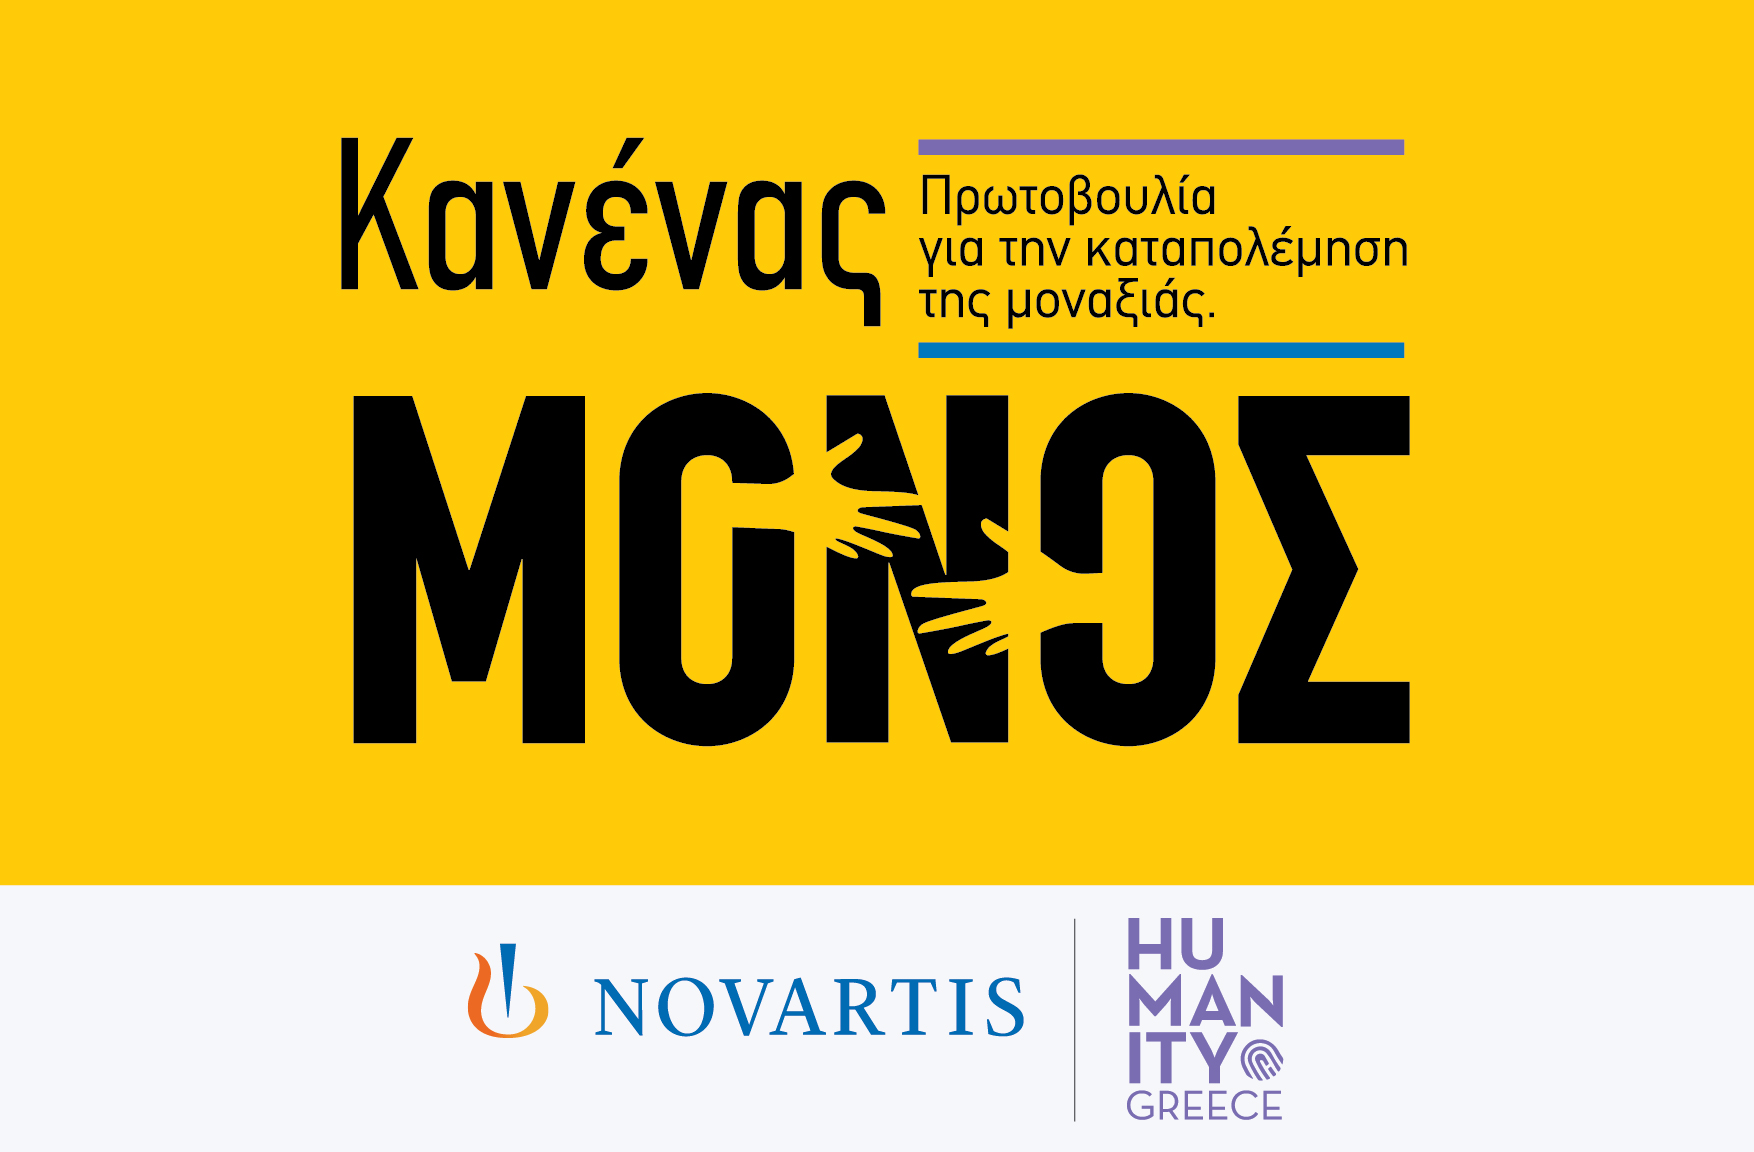 Η Novartis Hellas ανακοινώνει τη νέα πρωτοβουλία εταιρικής υπευθυνότητας «Κανένας Μόνος» για την ενδυνάμωση ατόμων της Τρίτης Ηλικίας © Novartis